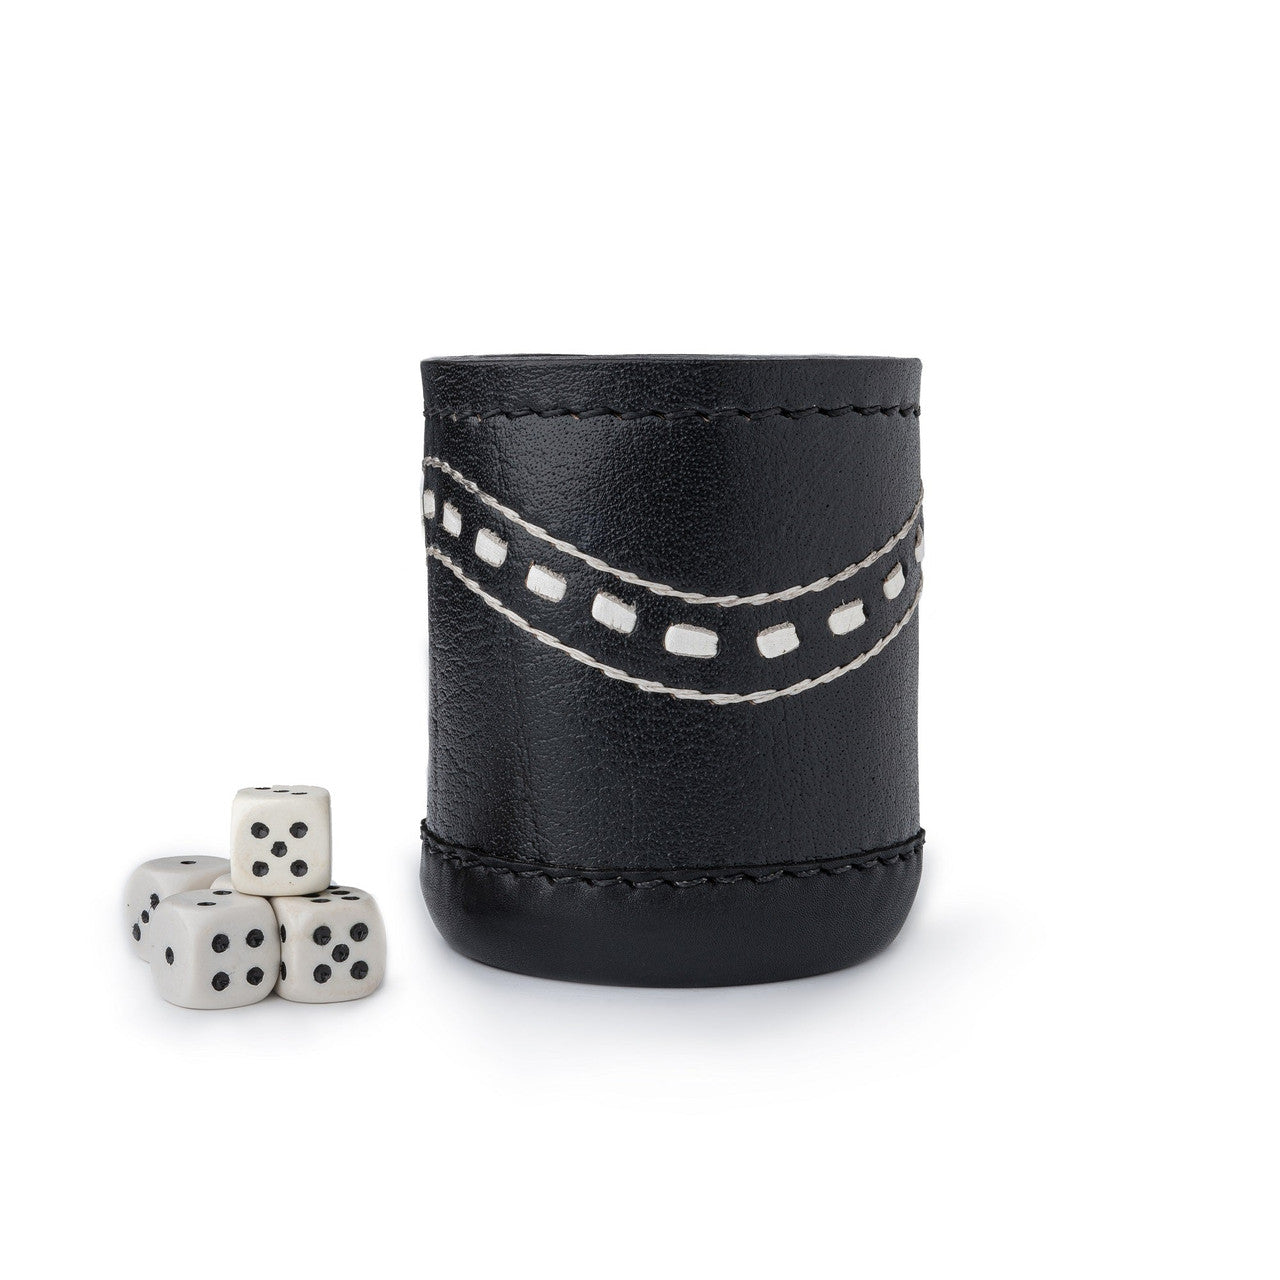 dice cup,cup,black dice cup,leather dice cup ,leather black dice cup,